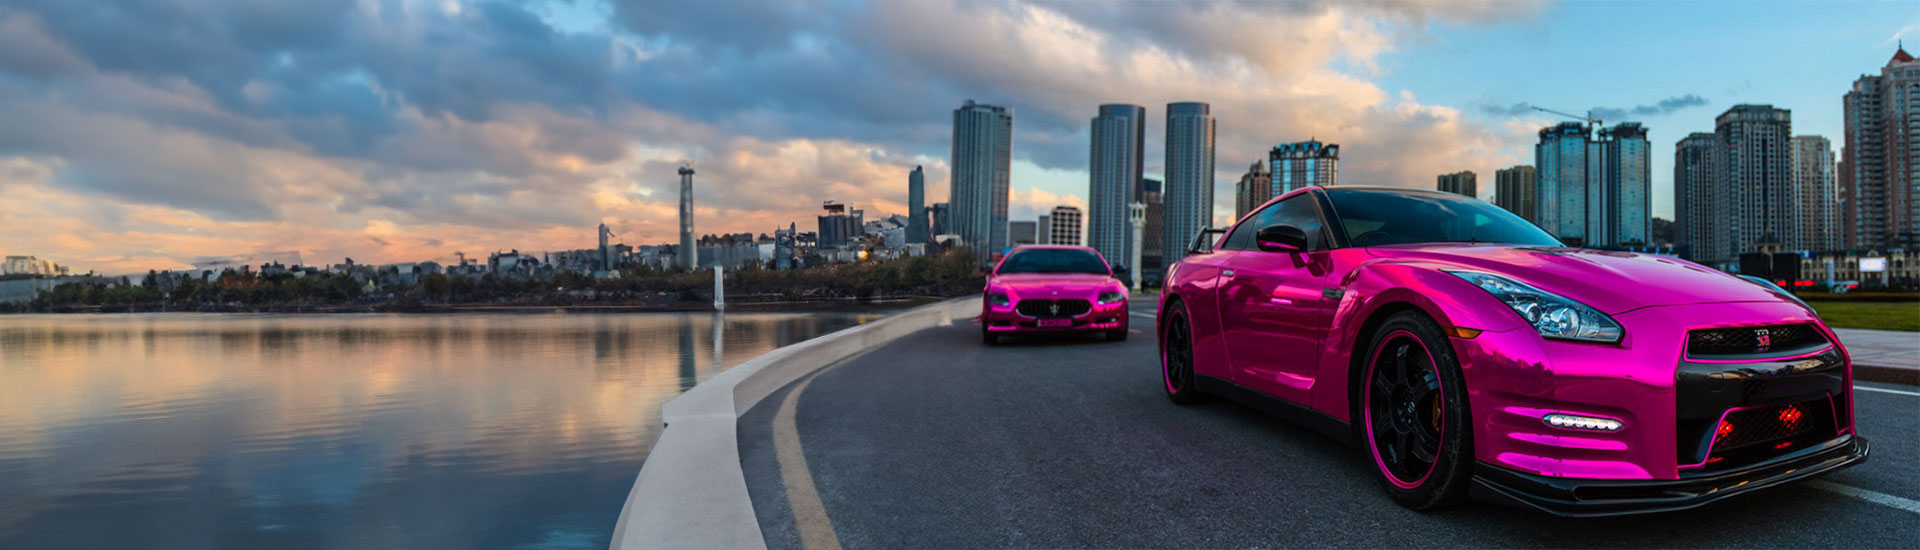 Pink Car Wraps